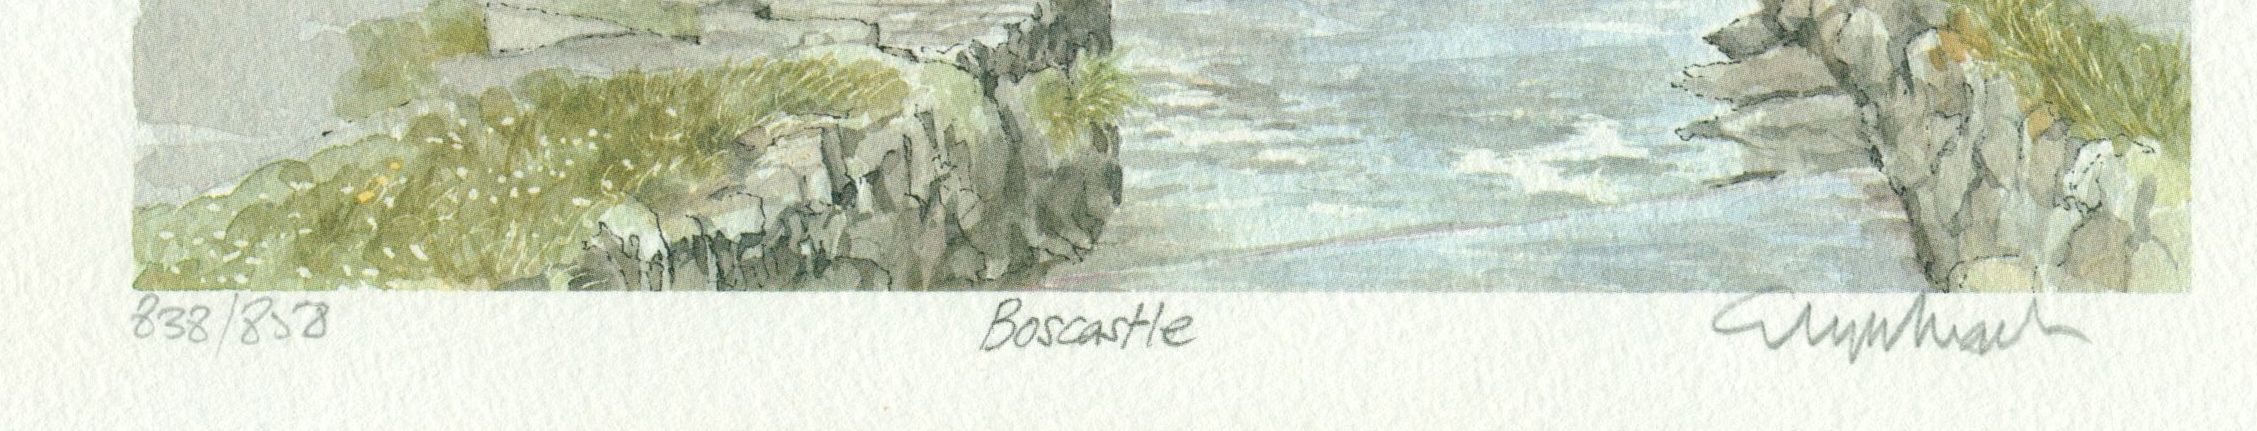 Boscastle in Cornwall